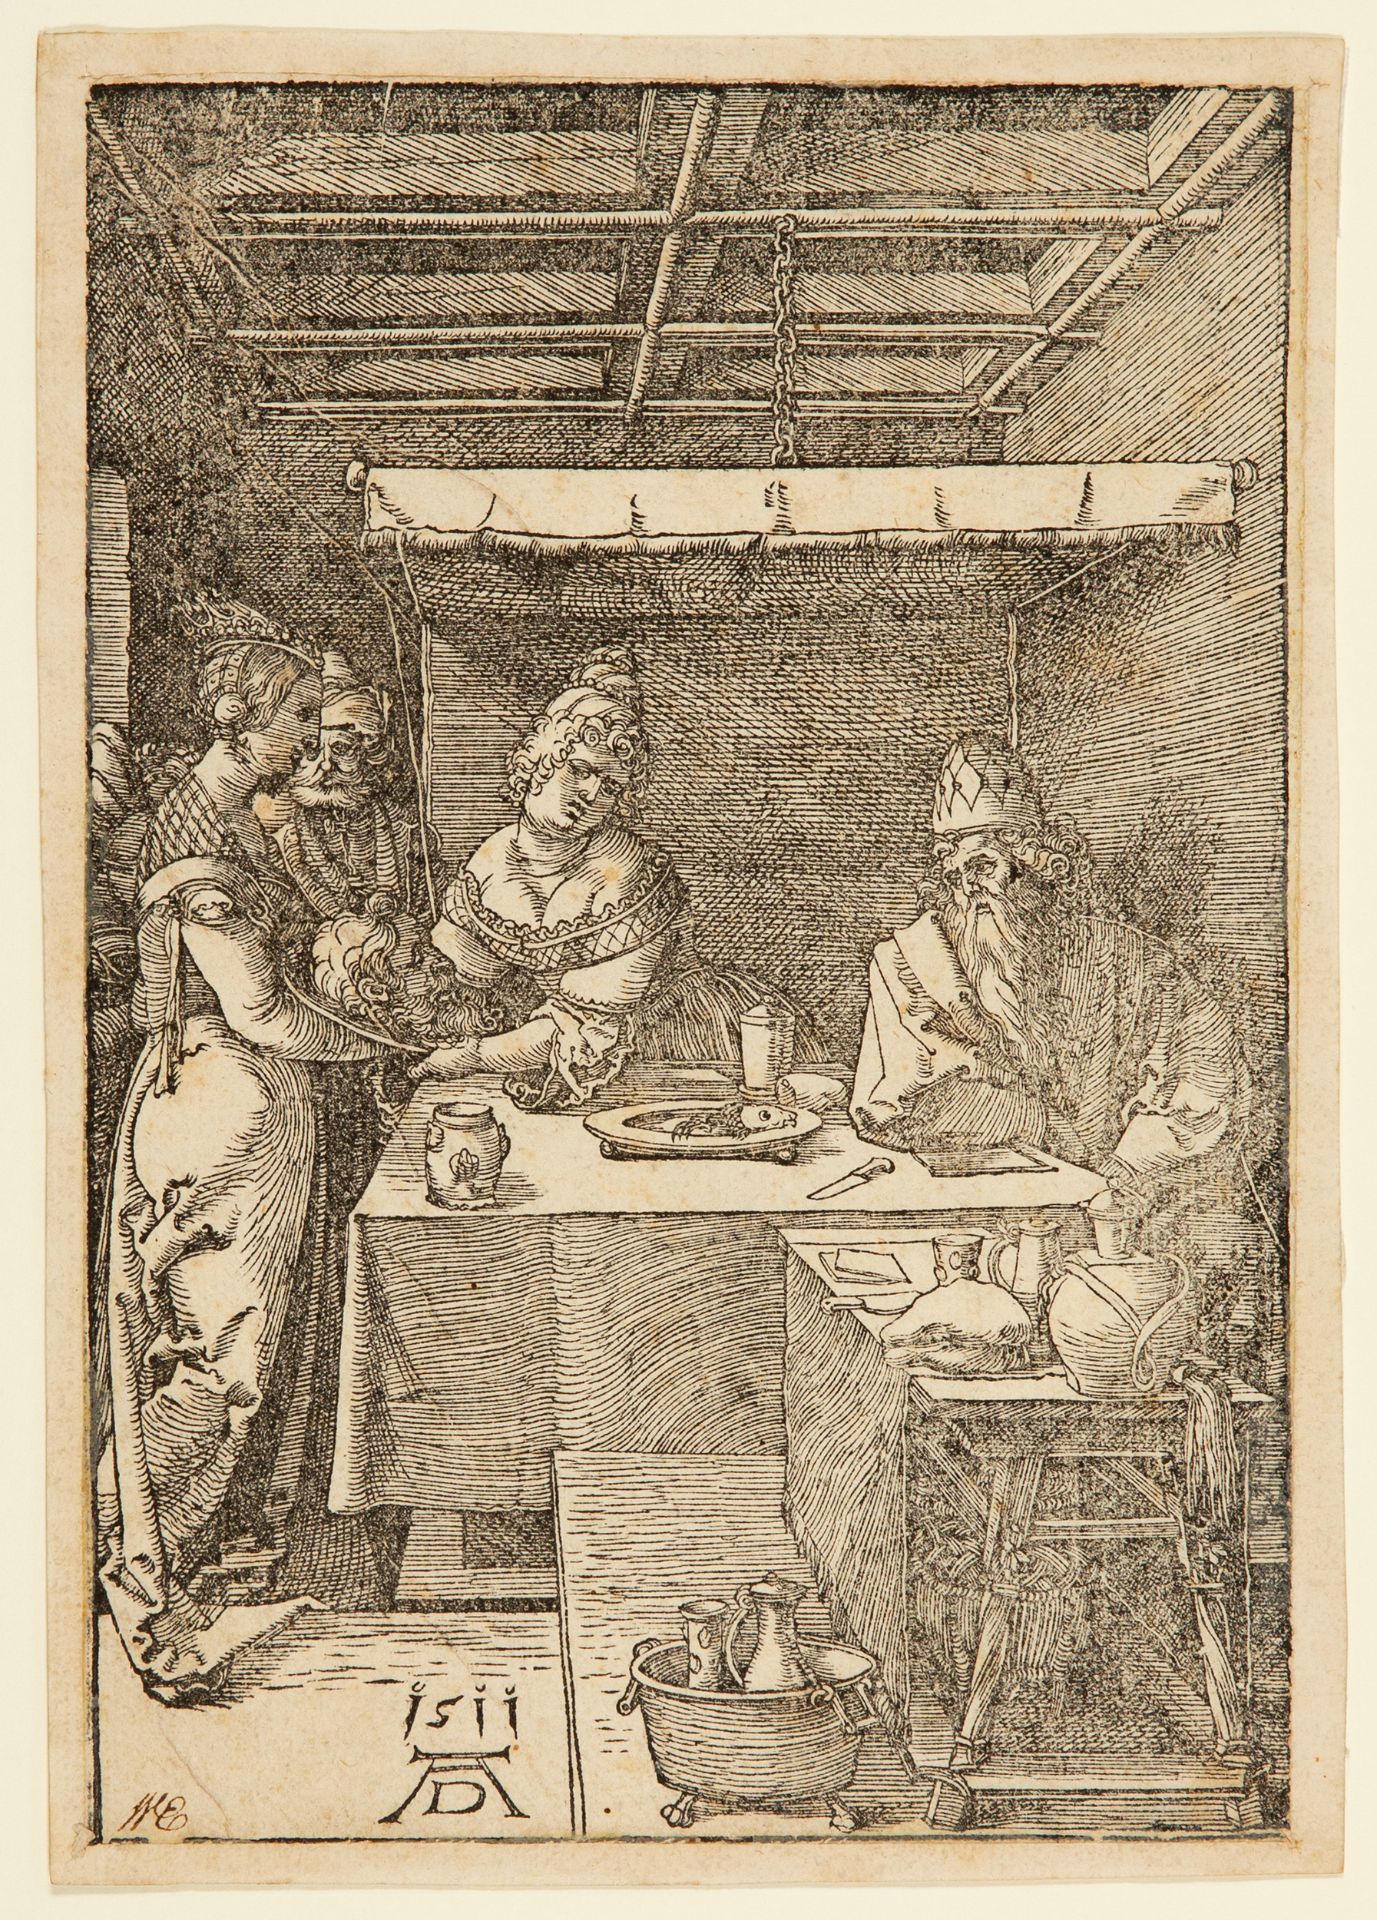 Albrecht Dürer. Herodias empfängt das Haupt des Johannes. 1511. Holzschnitt. Meder 232 d/e (von g), 